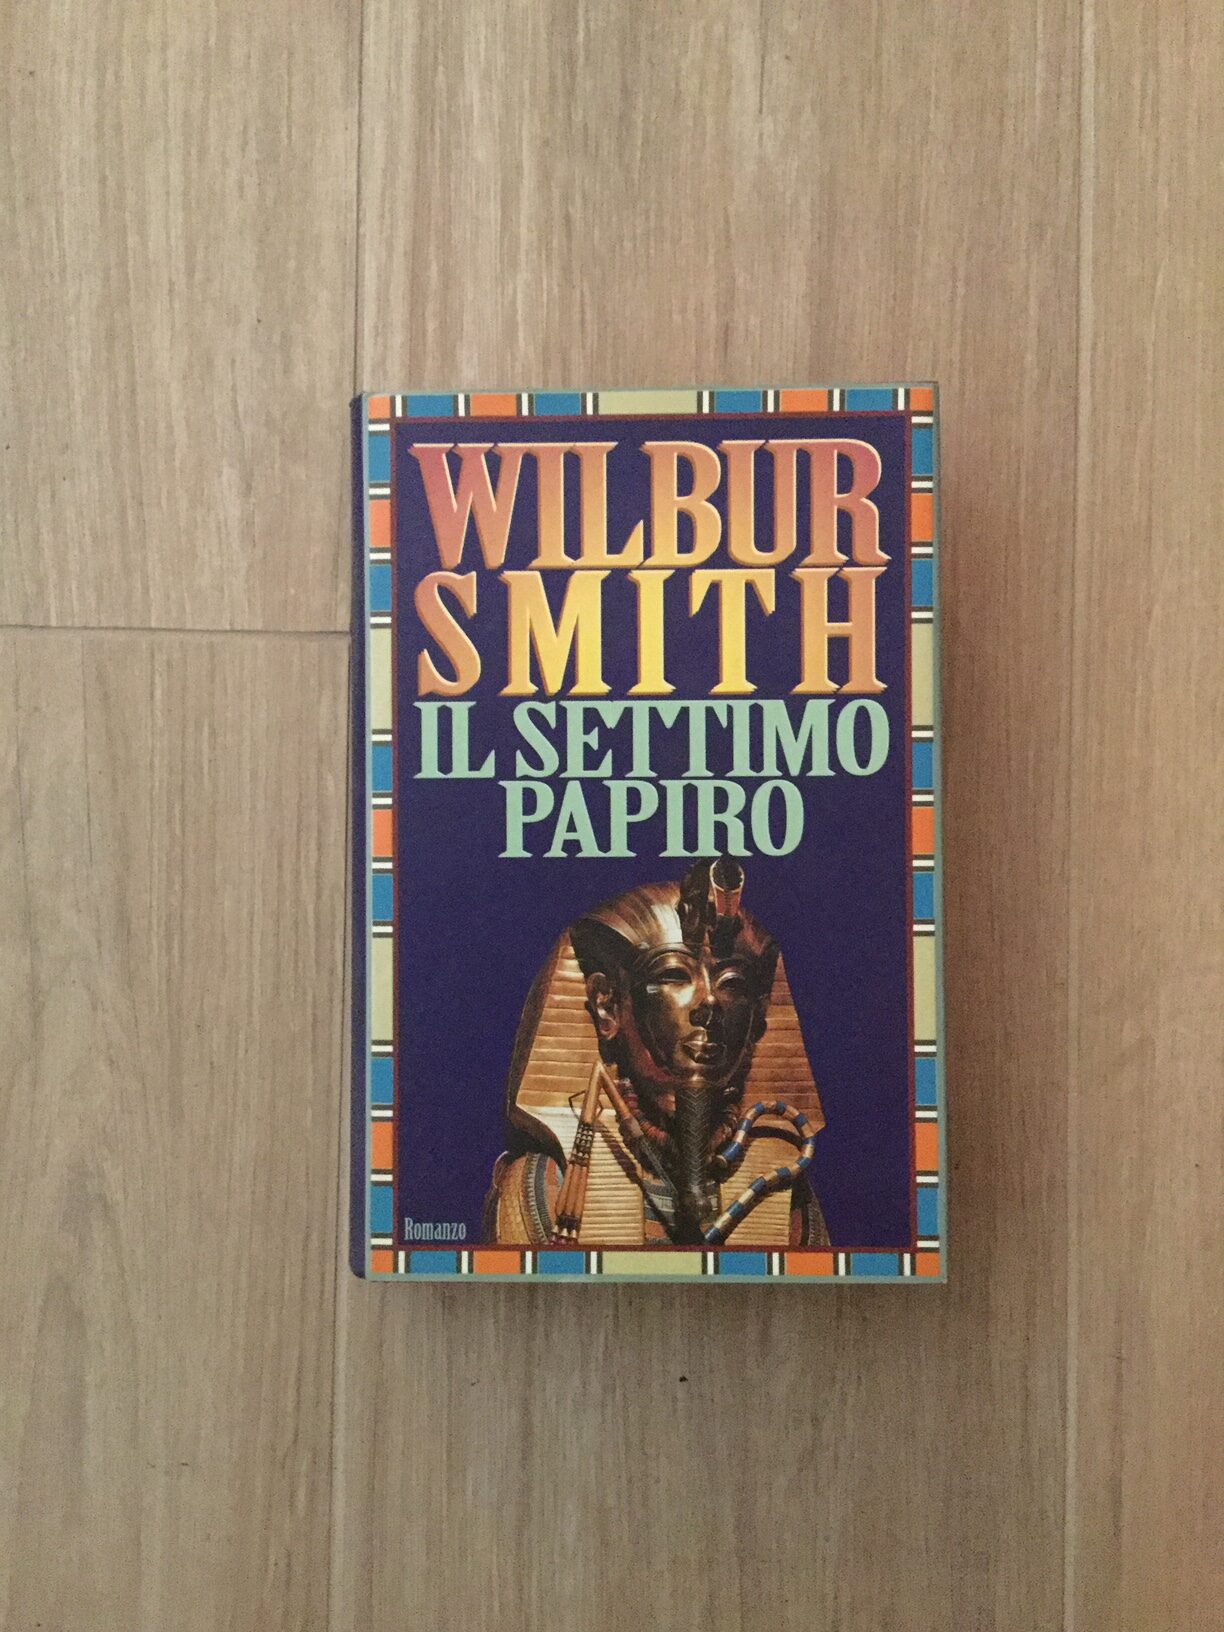 “Il settimo papiro” – Wilbur Smith